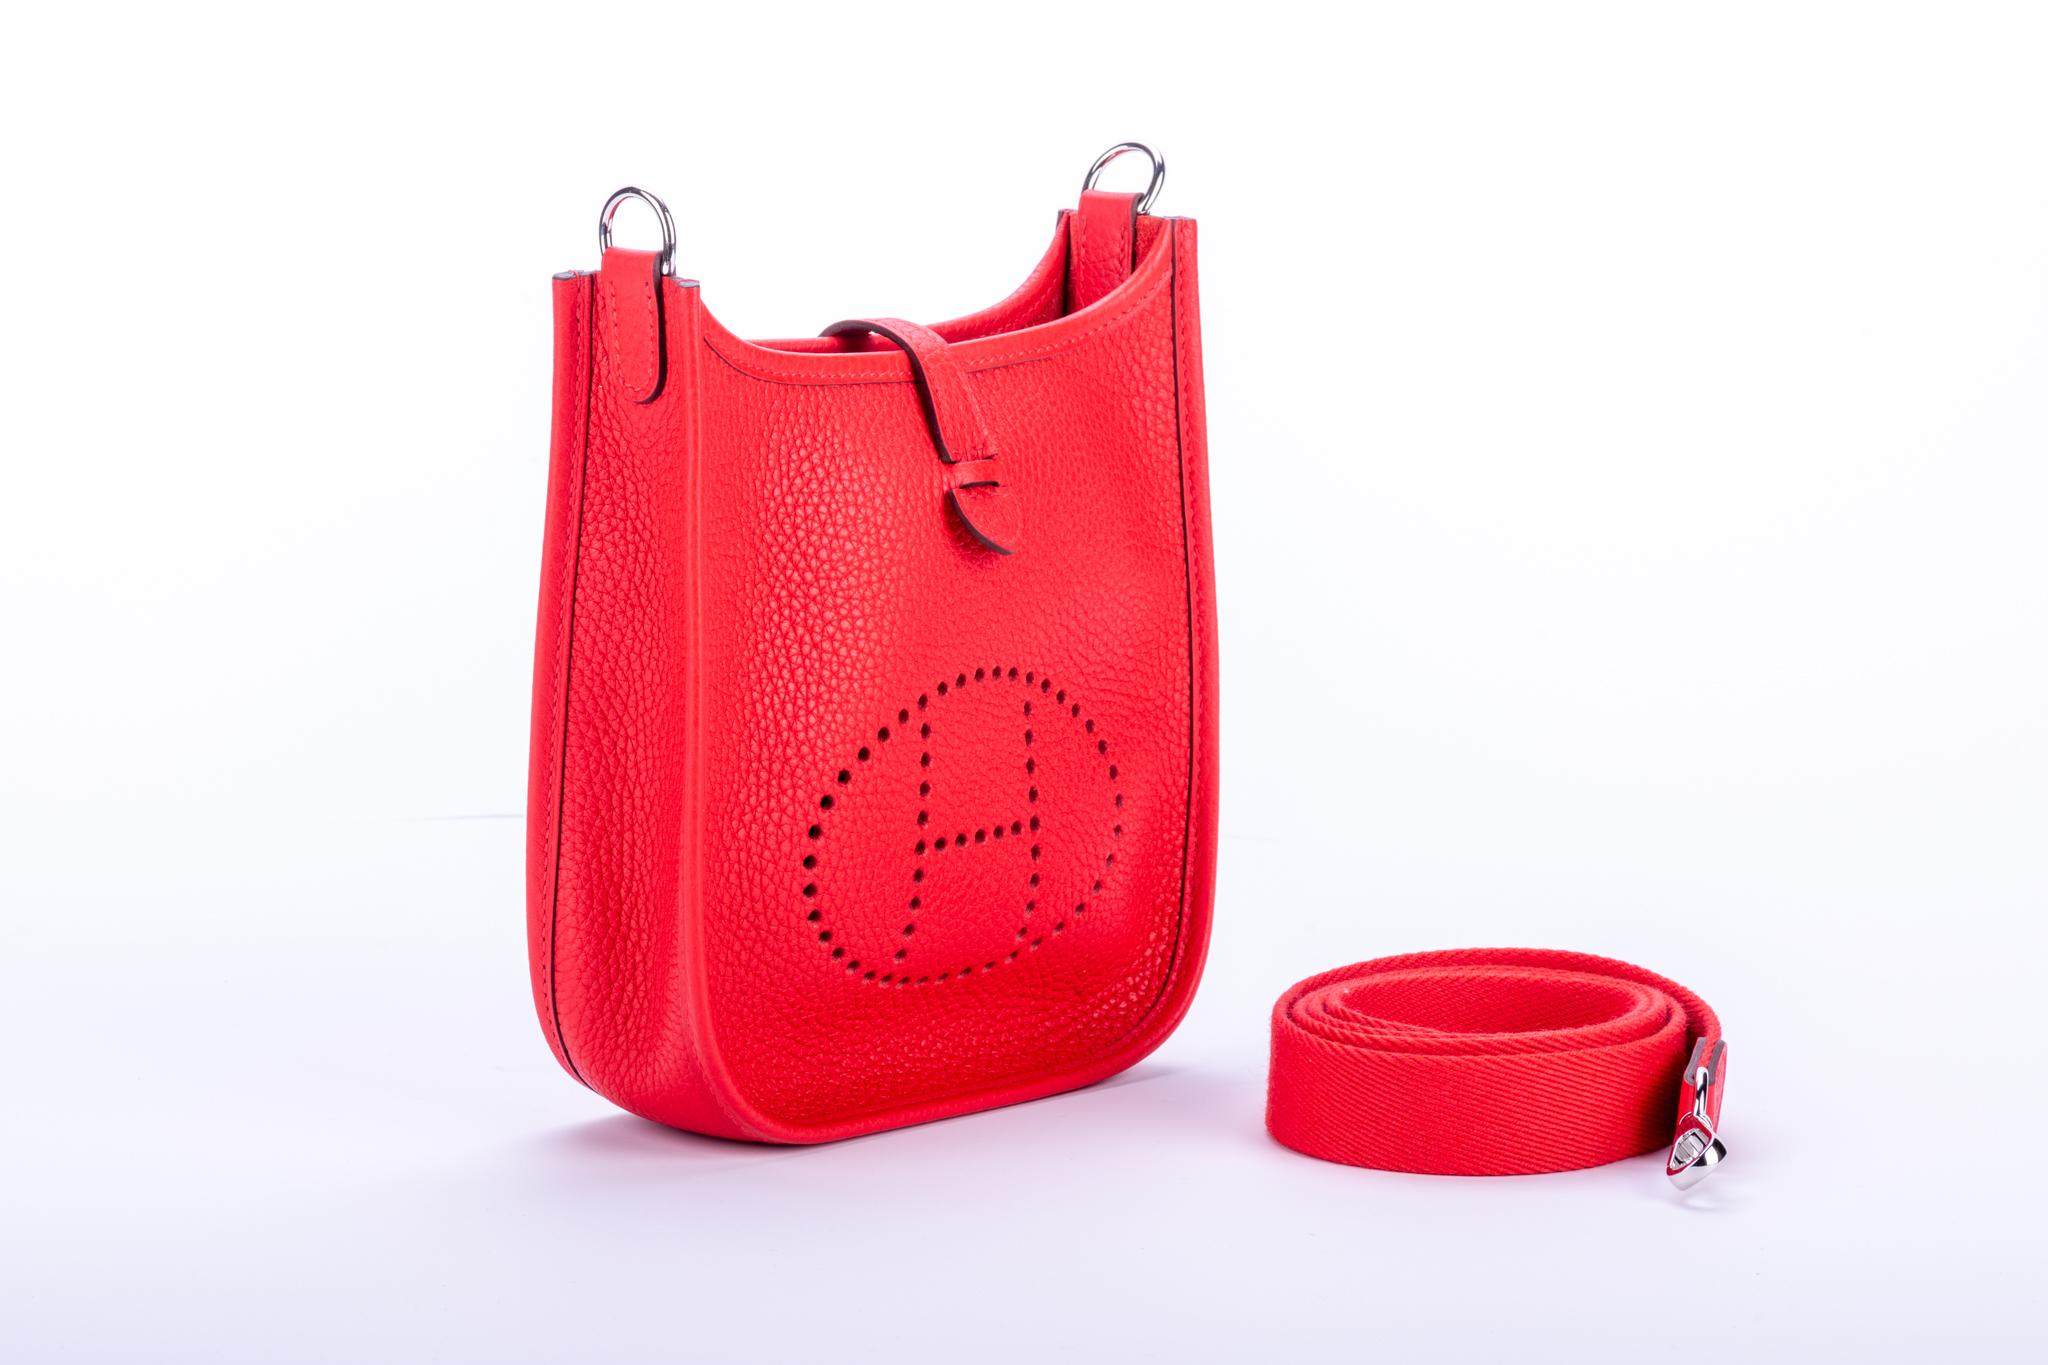 Mini sac Hermès Evelyne en cuir rouge de coeur Taurillon Clemence et accessoires en palladium. Horodateur D pour 2019. Neuf dans sa boîte avec sa housse d'origine.